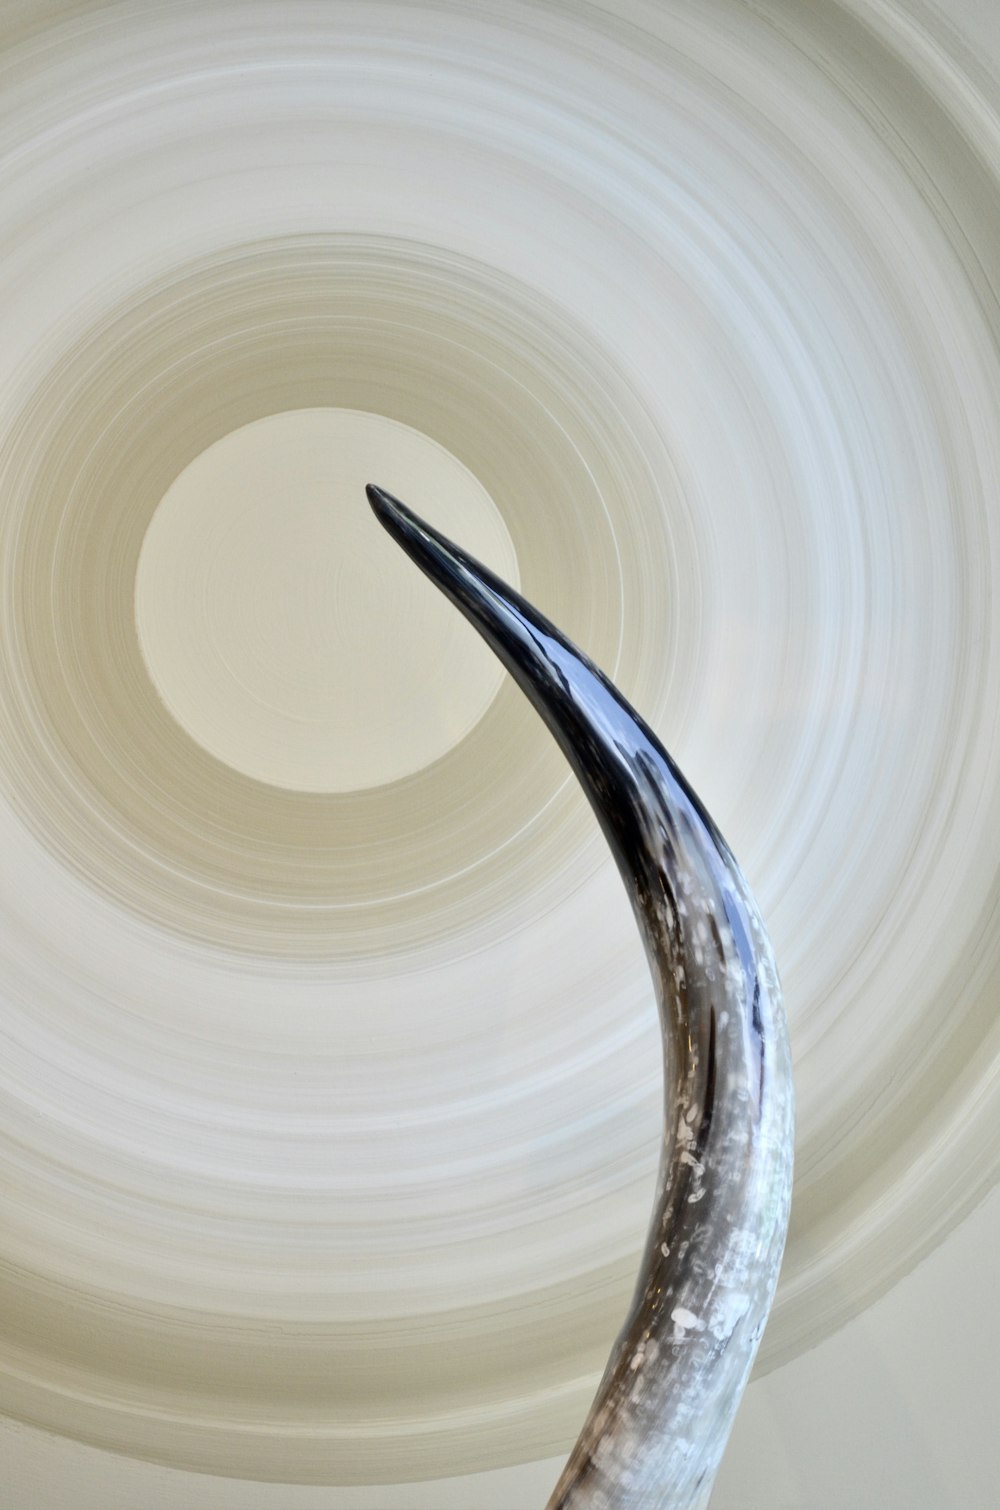 a sculpture of a long horn in front of a circular light fixture